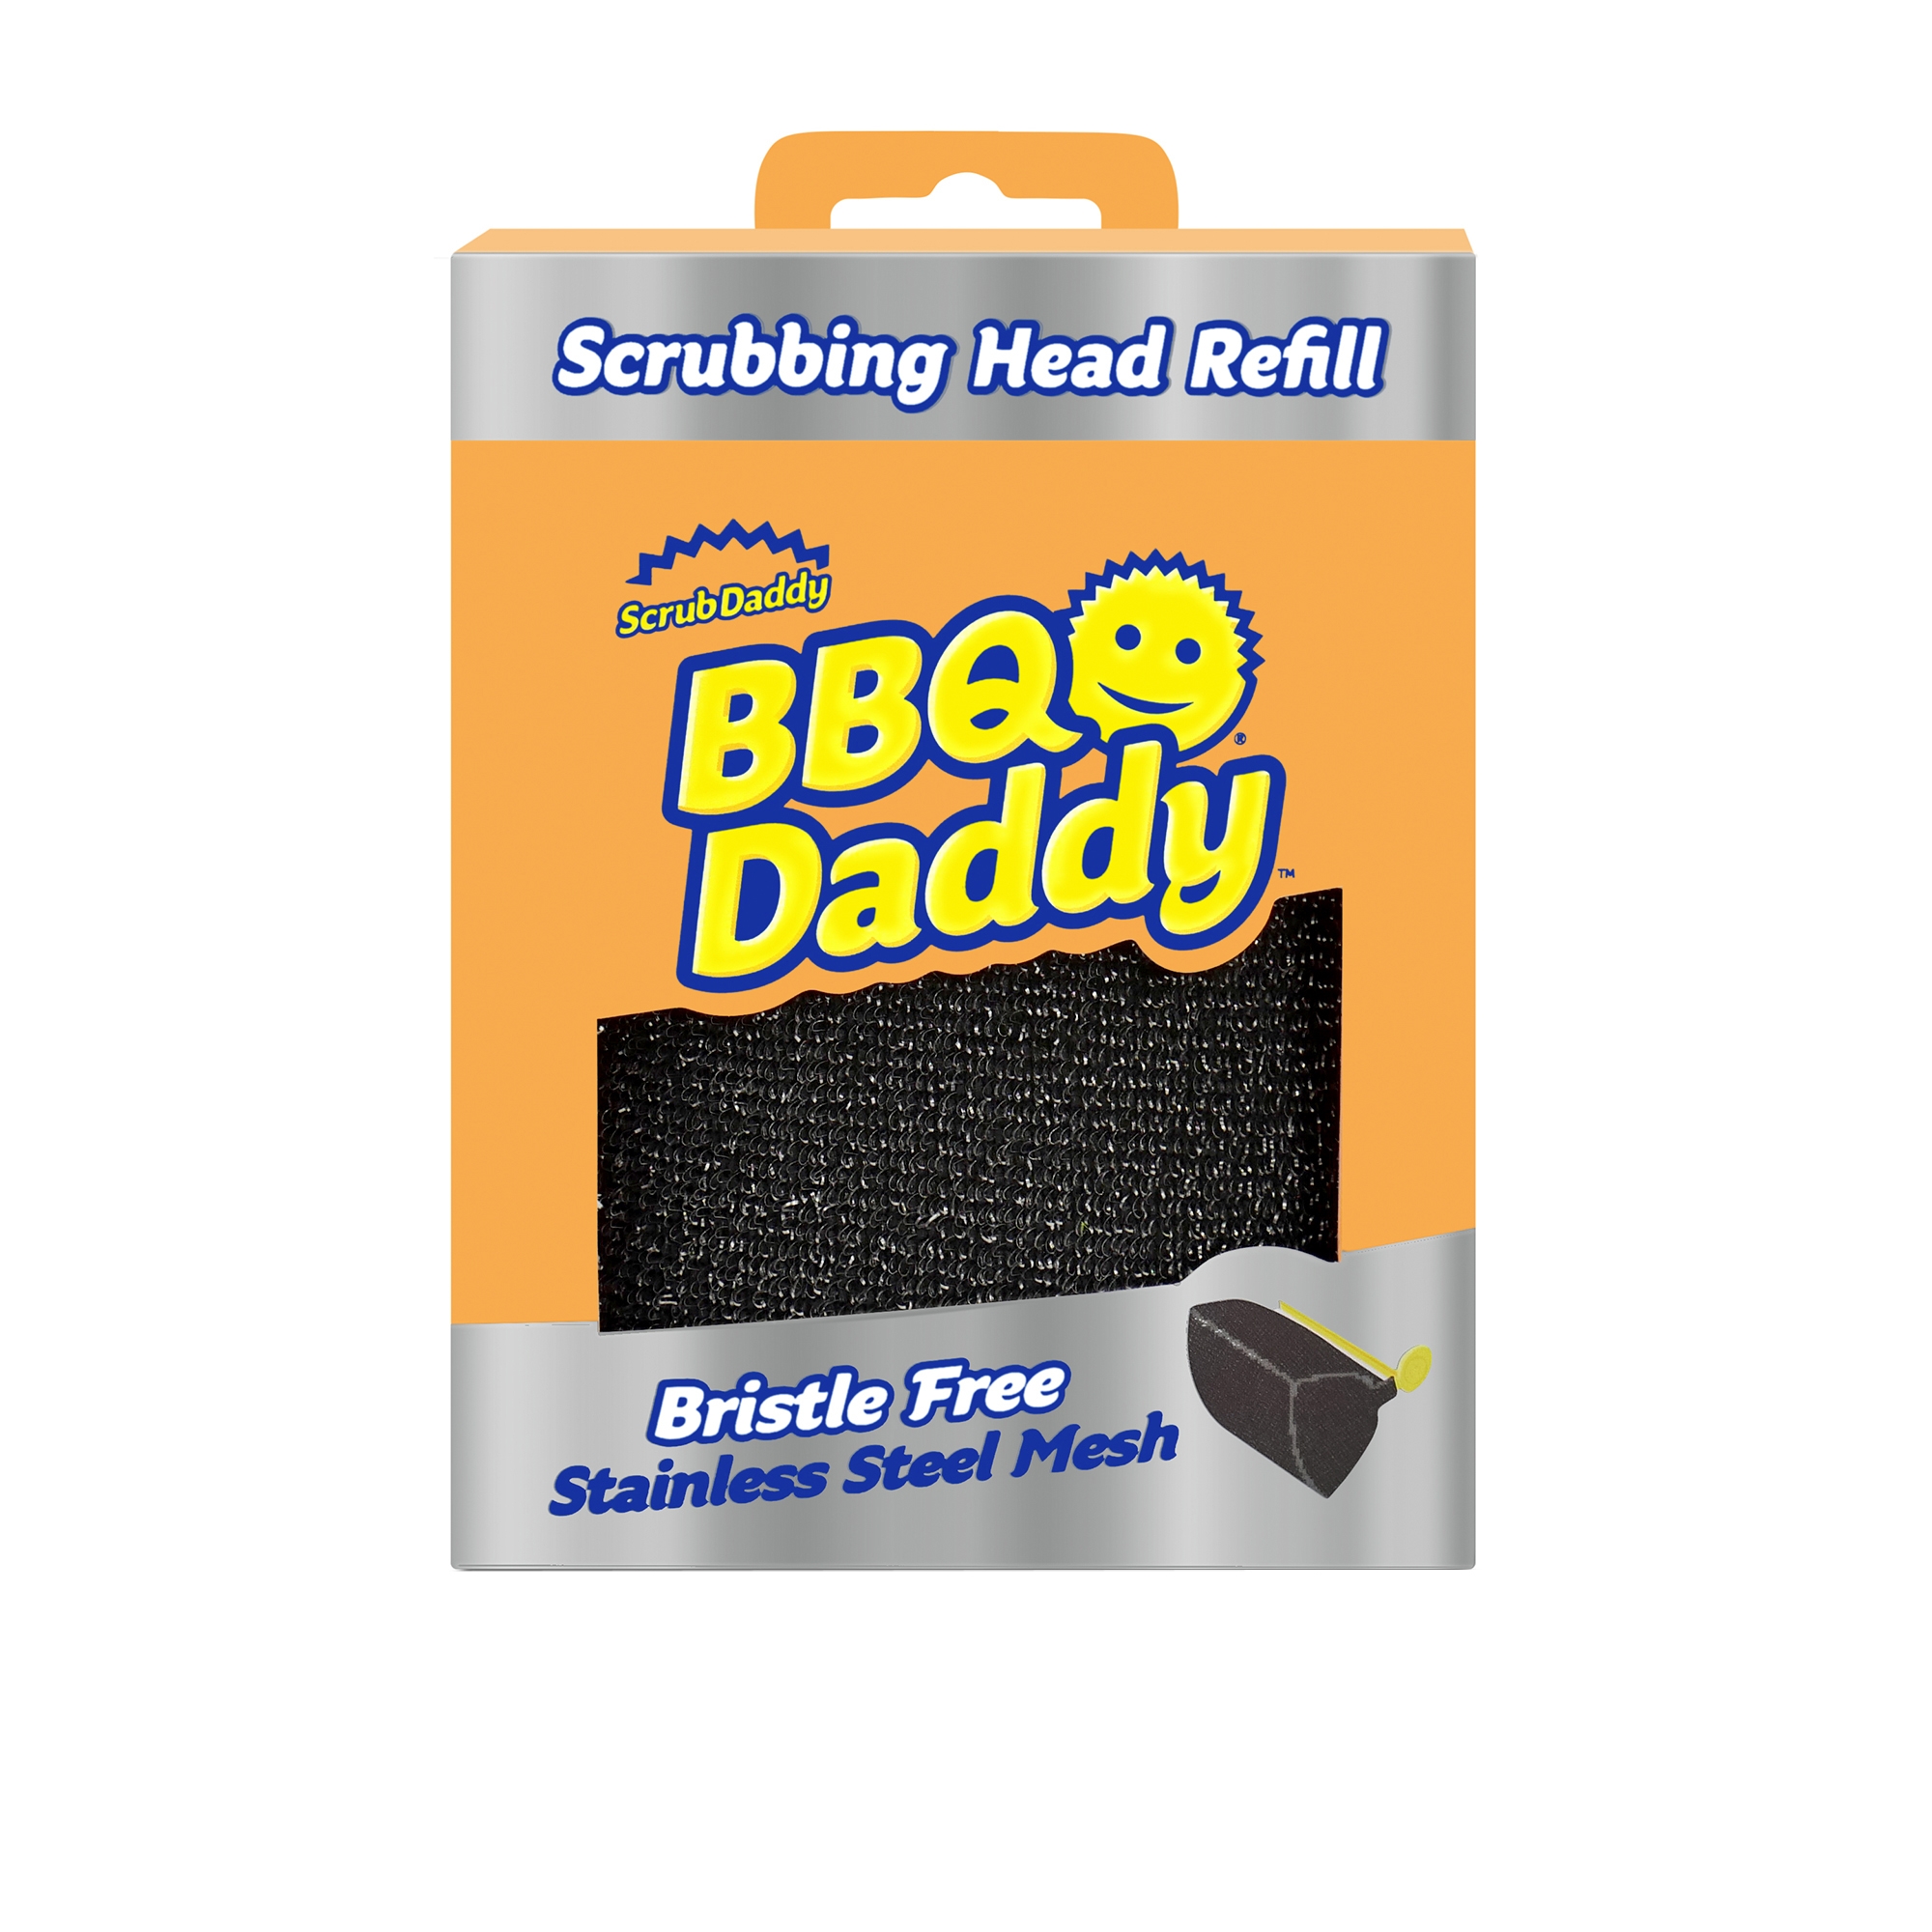 Scrub Daddy - BBQ Daddy Scrubbing Head Refill Image 1